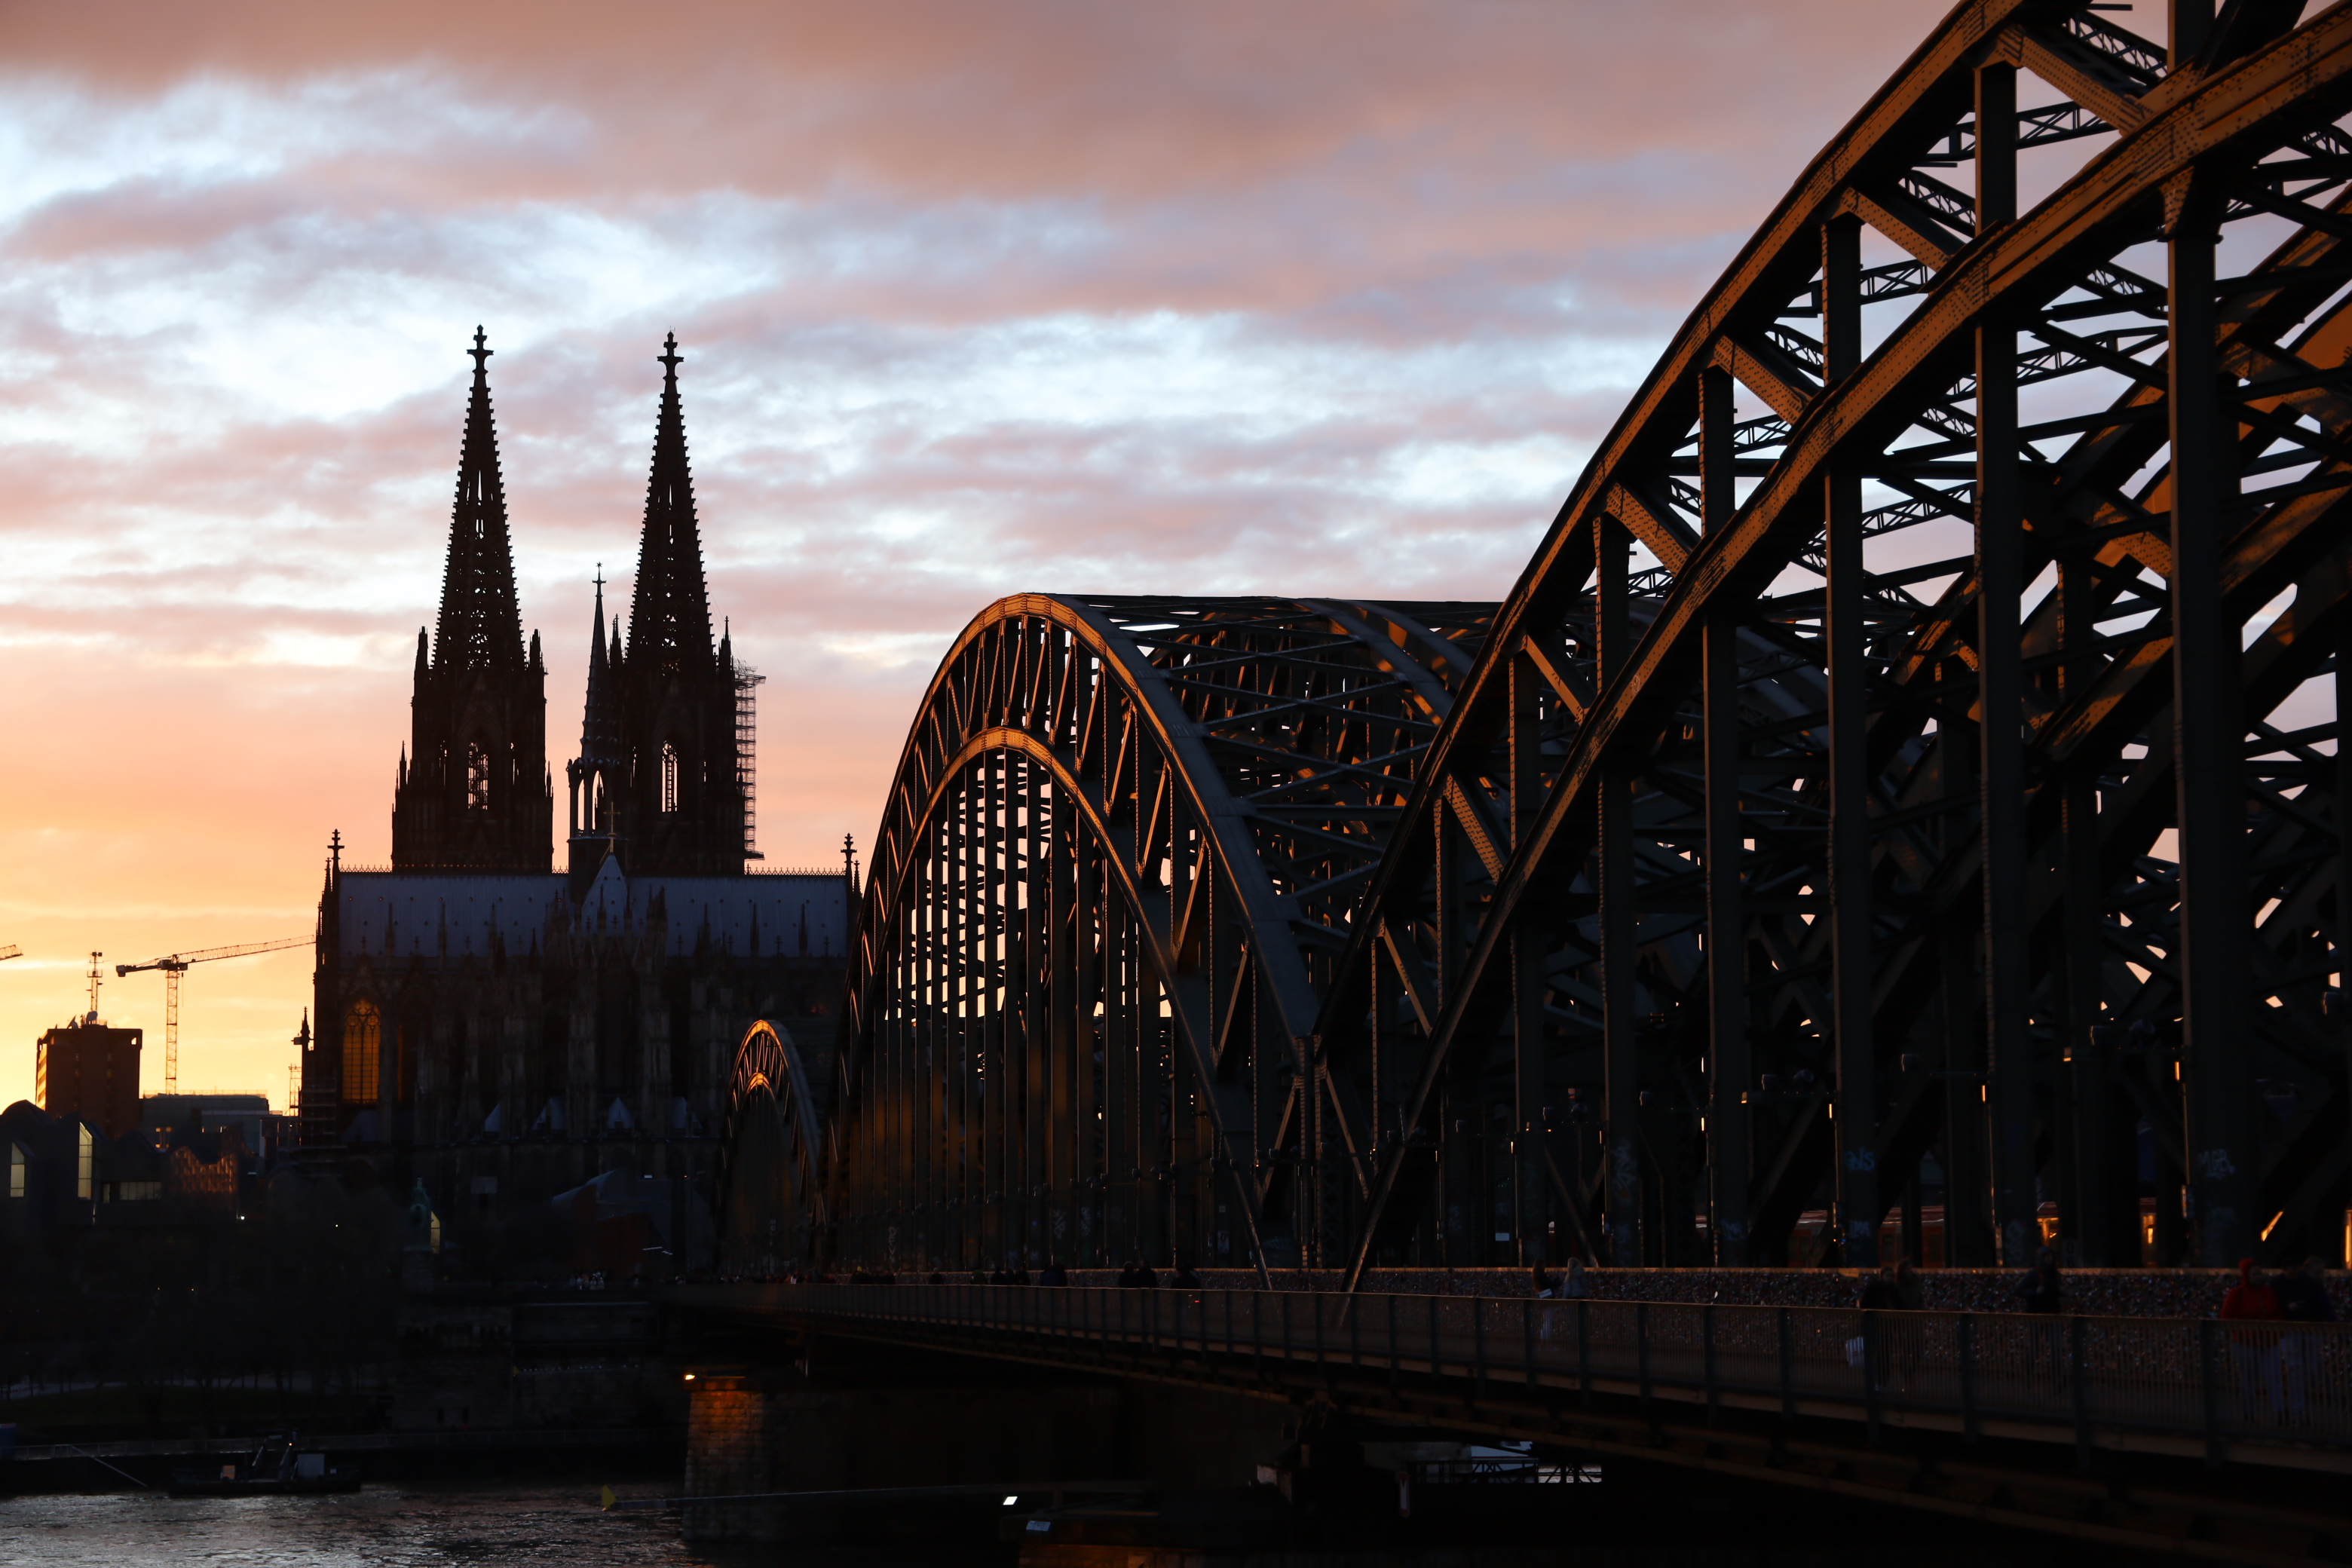 Hohenzollernbrücke bei Abendlicht. Blende 4.0, ISO 100, Verschlusszeit: 1/80s, Brennweite: 72mm